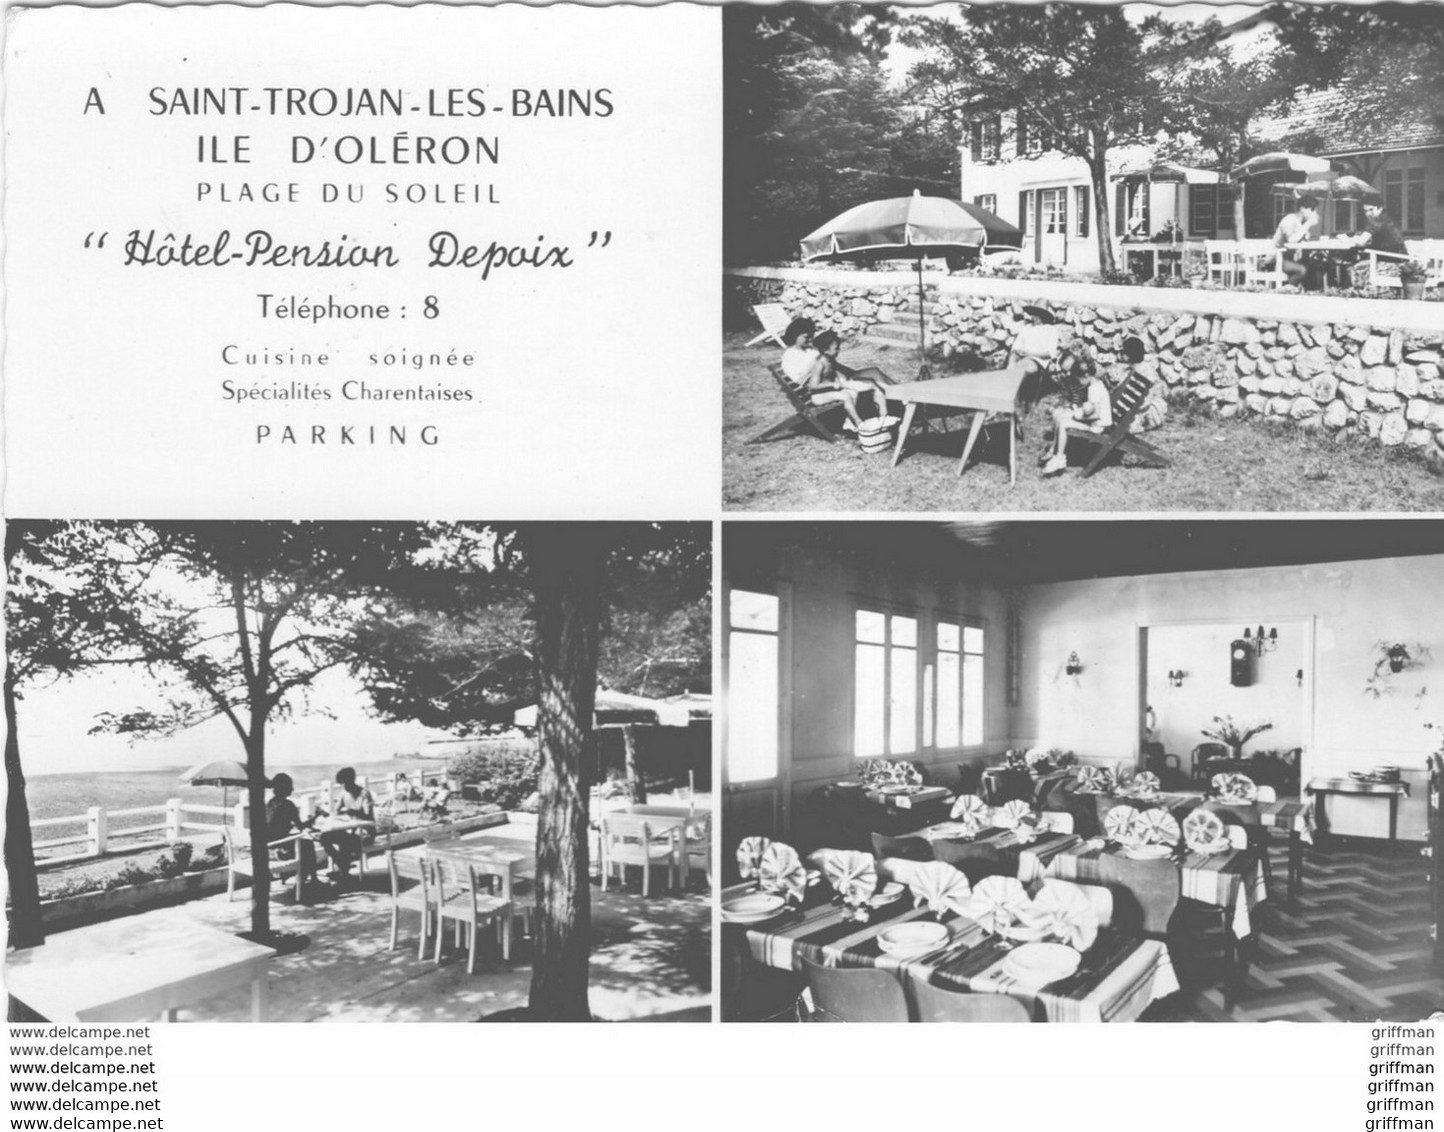 ILE D'OLERON SAINT TROJAN HOTEL PENSION DEPOIX 1964 CPSM GM TBE - Ile D'Oléron